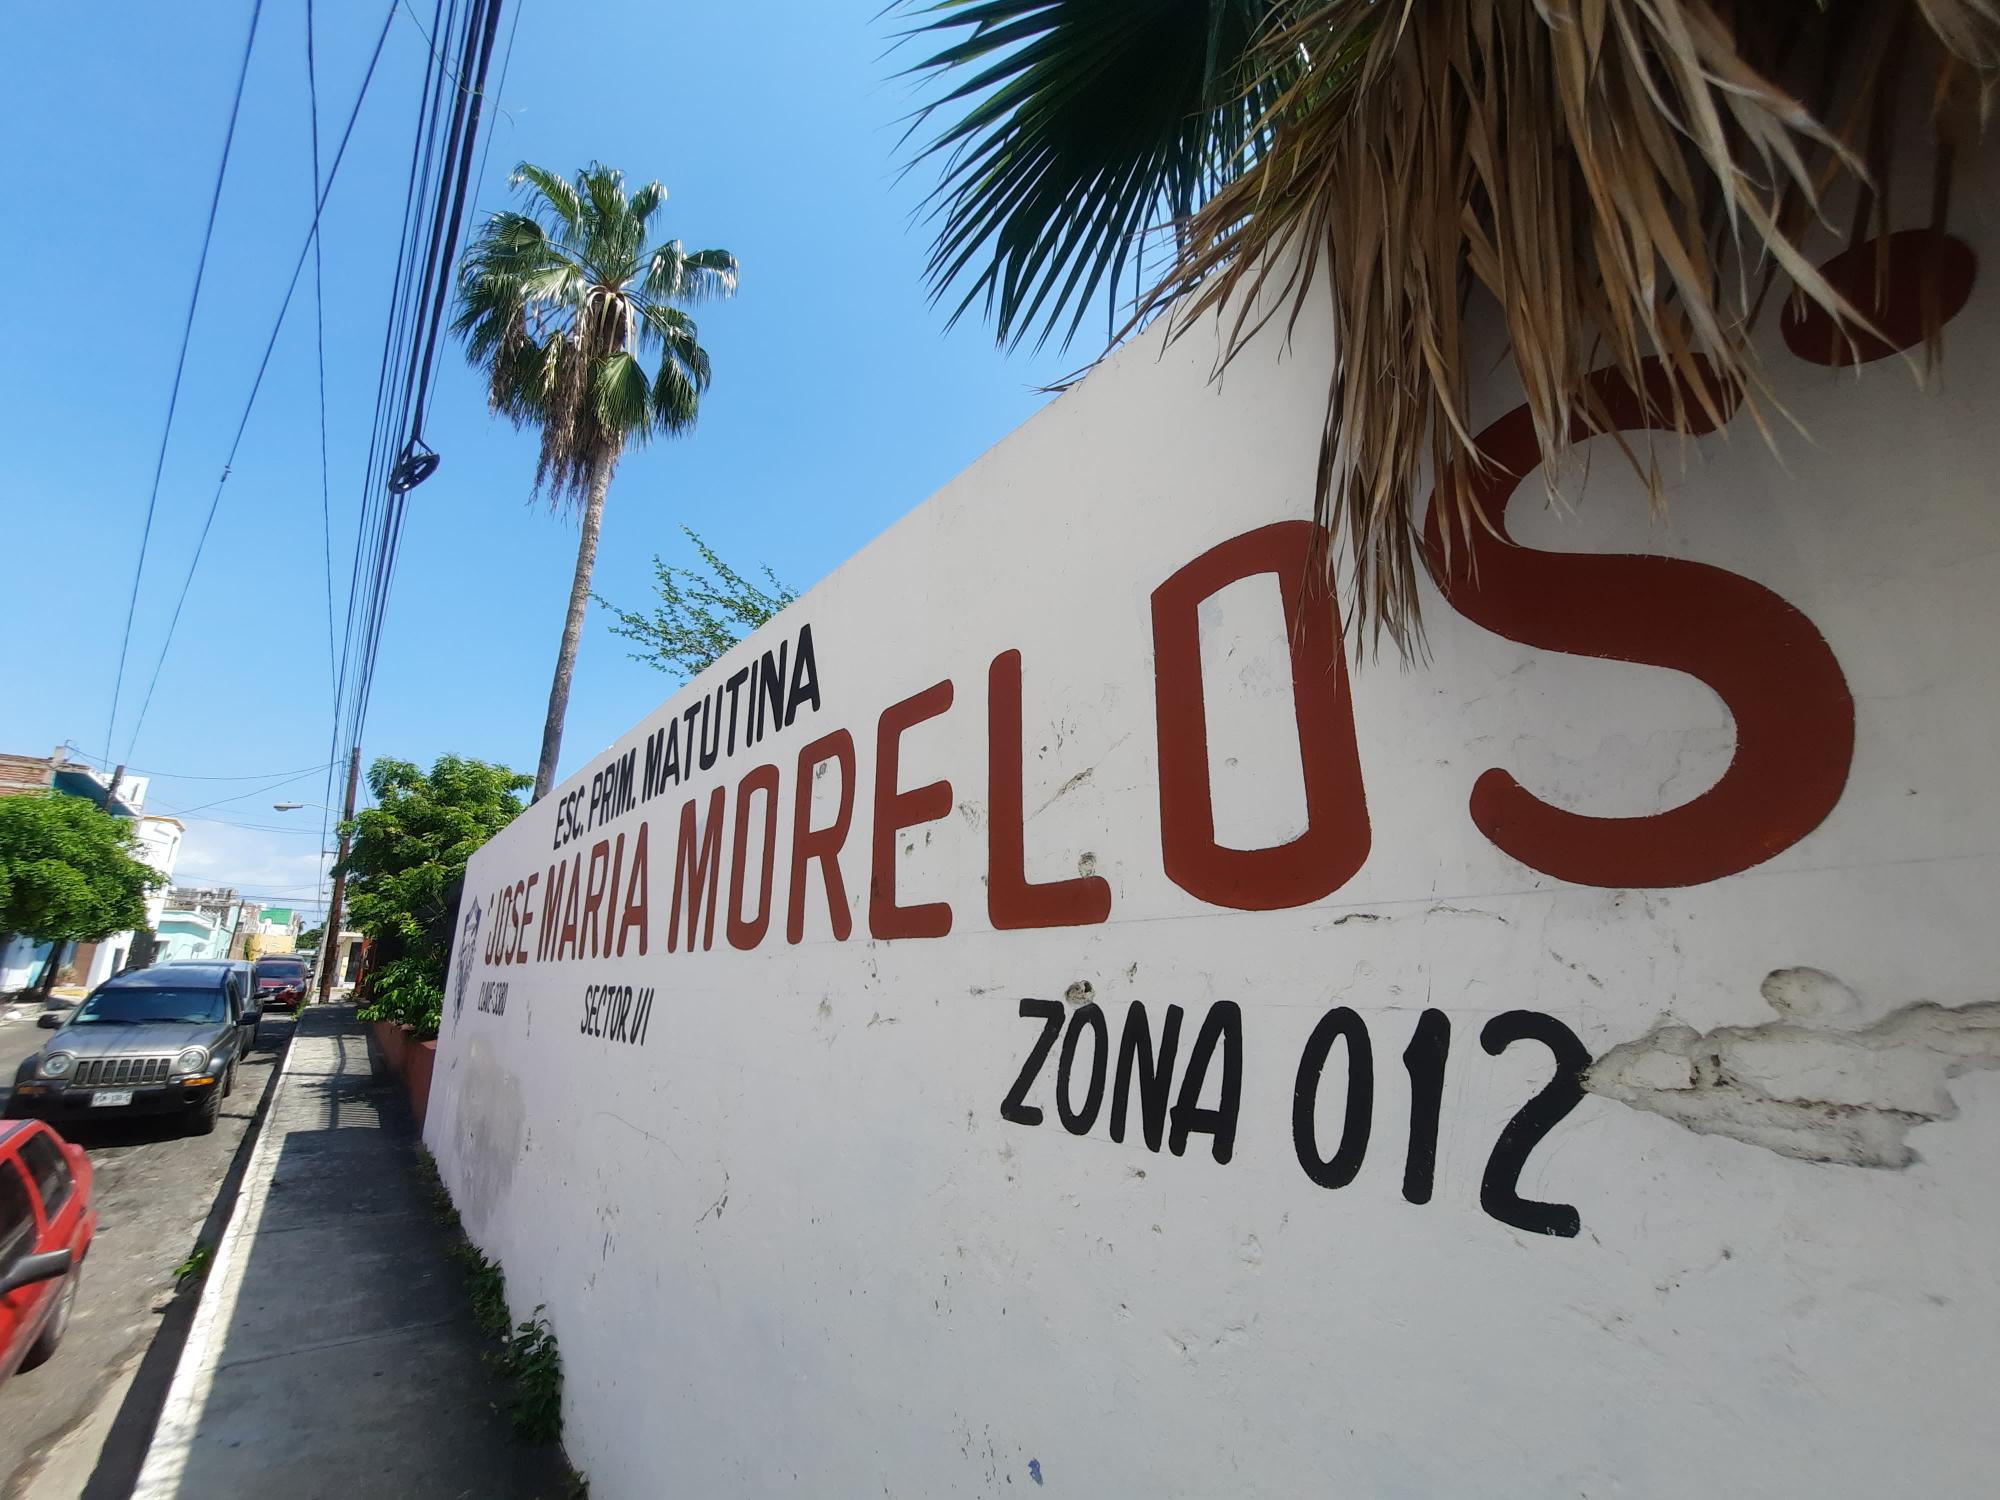 $!Regresan a clases presenciales tras retirar techumbre caída en primaria de Mazatlán